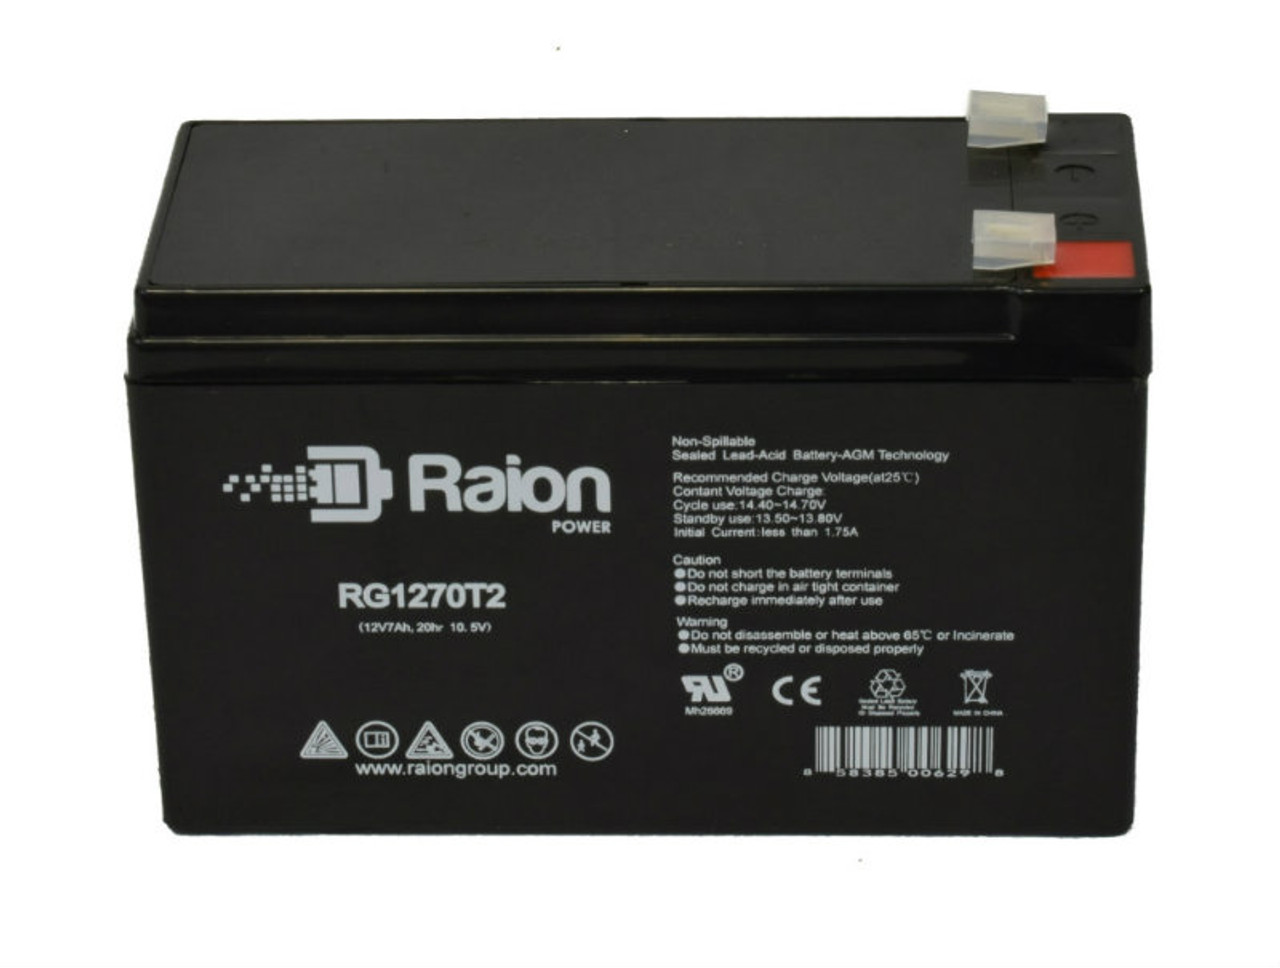 Raion Power RG1270T1 12V 7Ah Lead Acid Battery for Vision CG12-7A